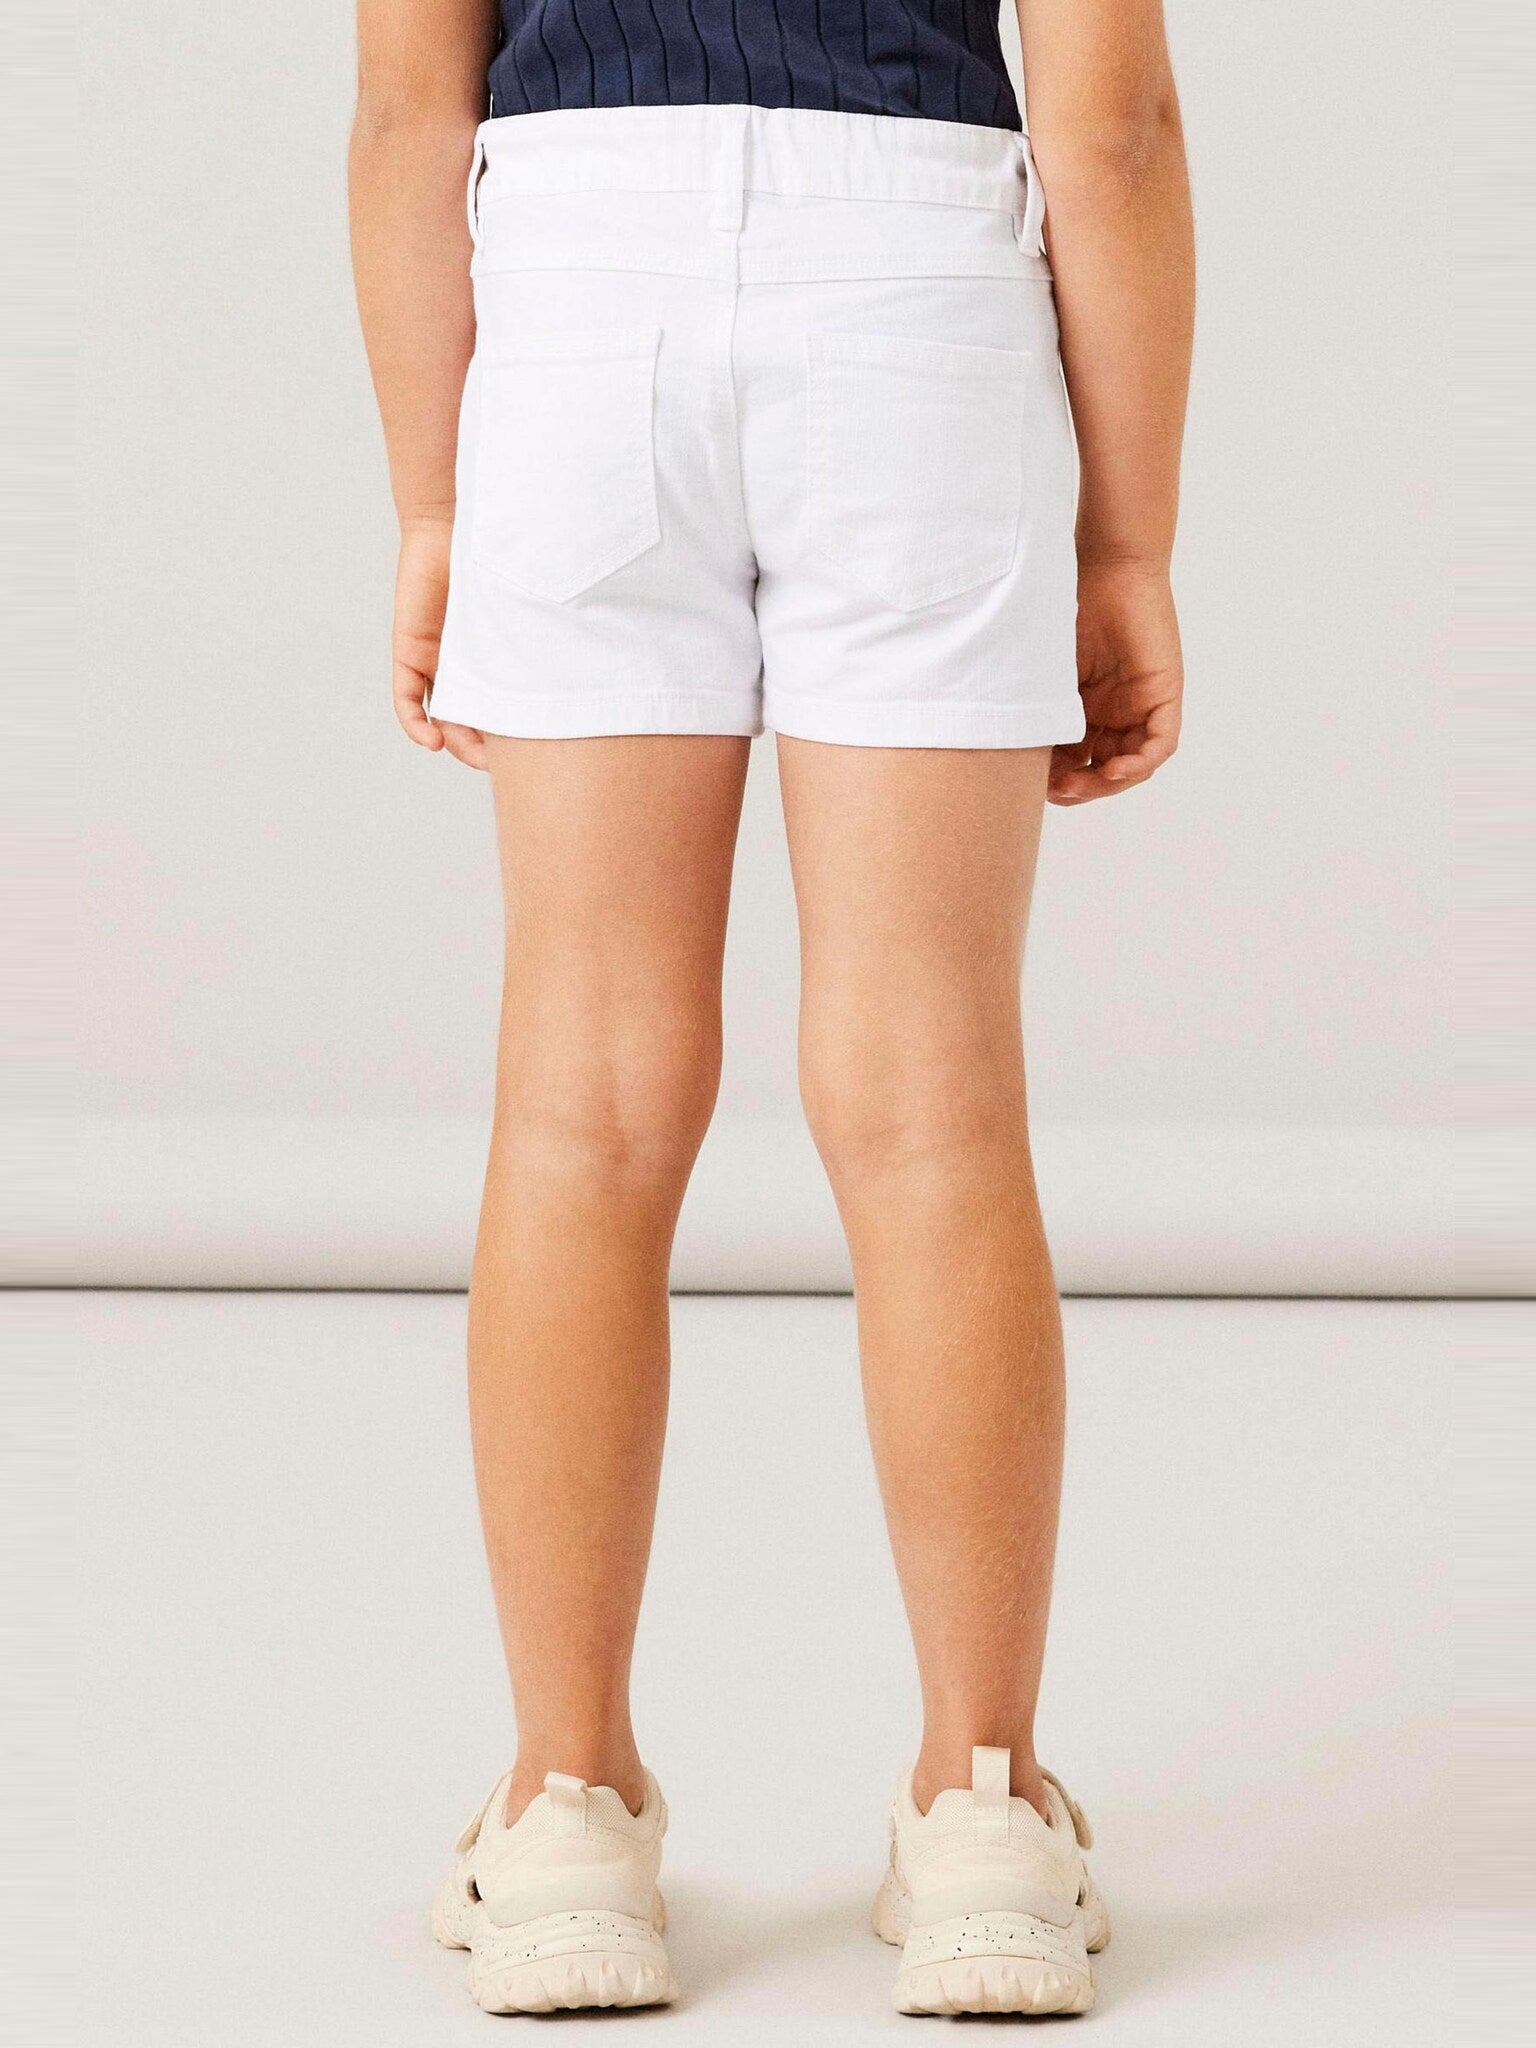 Old Navy Short For Girls-White-SP2426